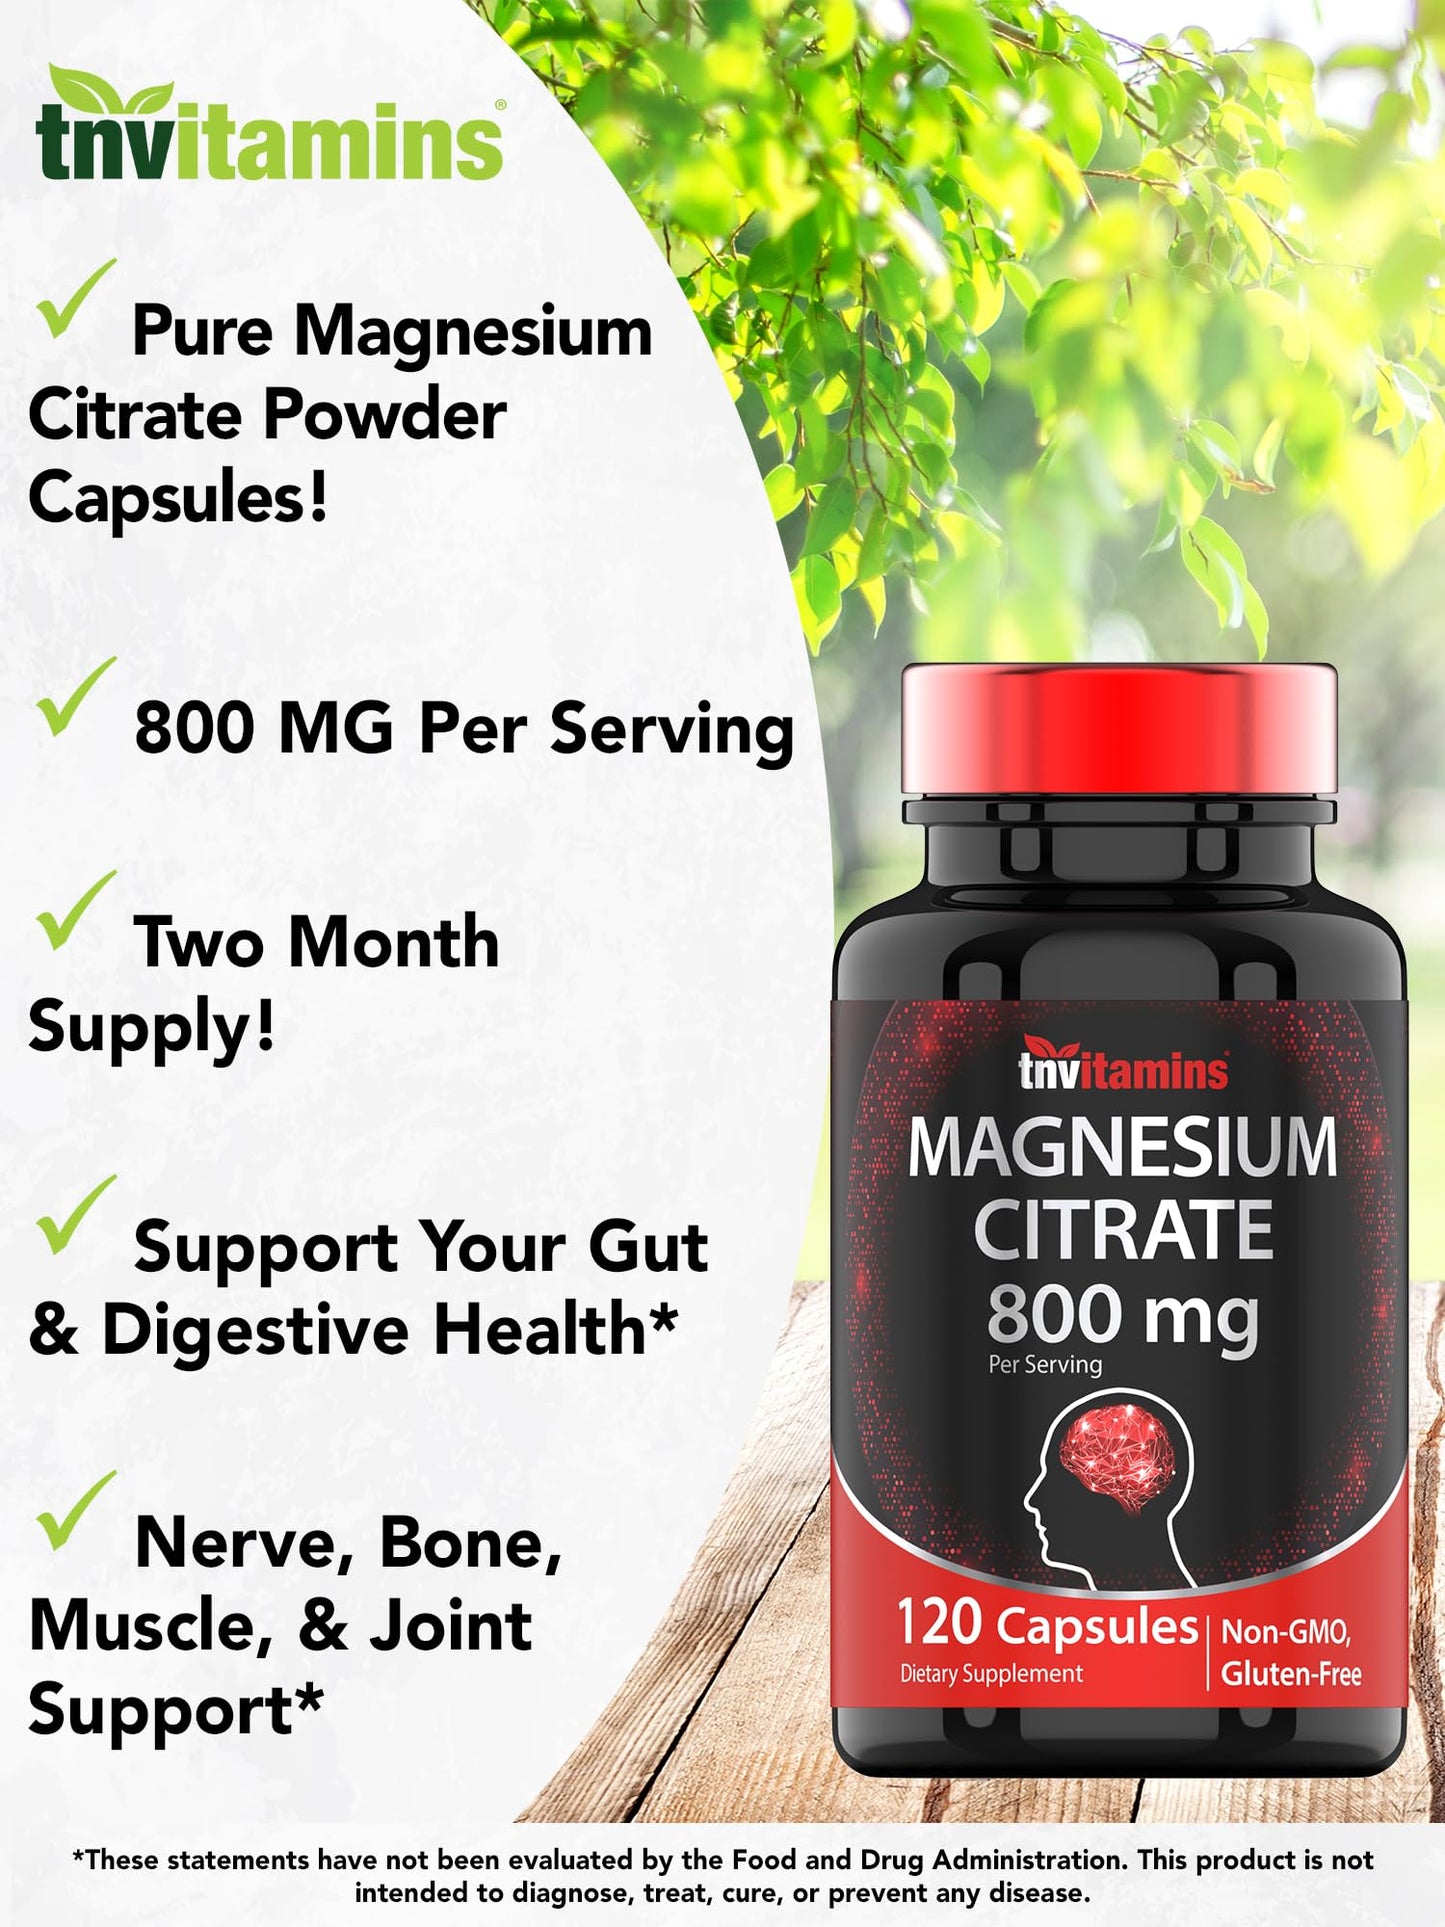 TNVitamins Magnesium Citrate 800 MG - 120 Capsules | Two Month Supply! | Pure Magnesium Citrate Powder Capsules | Citrato De Magnesio | Non-GMO | Produced in The USA!